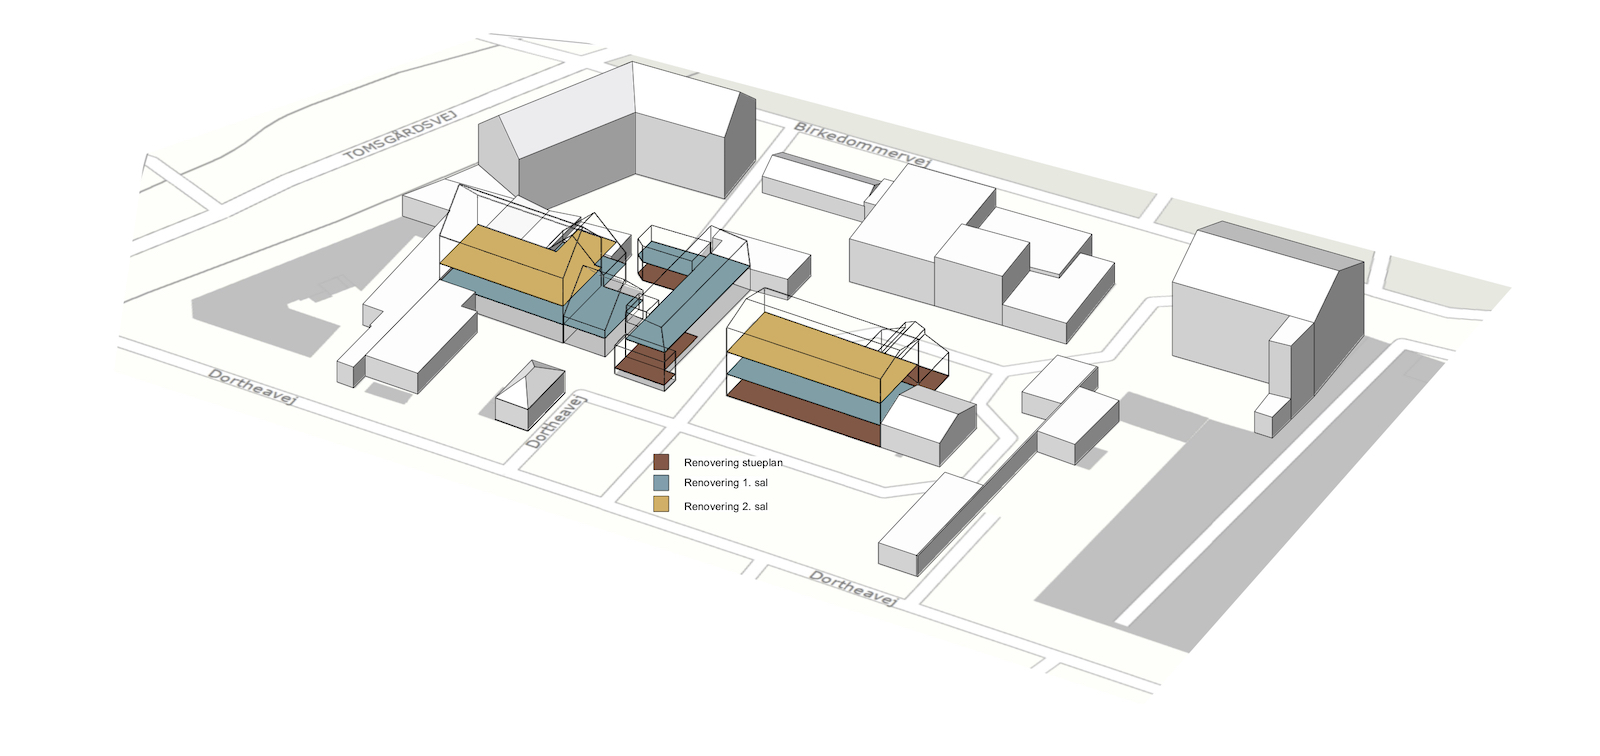 Ombygning af industribygninger til kontorer: Dortheavej 10 og 12 (3D situationsplan)